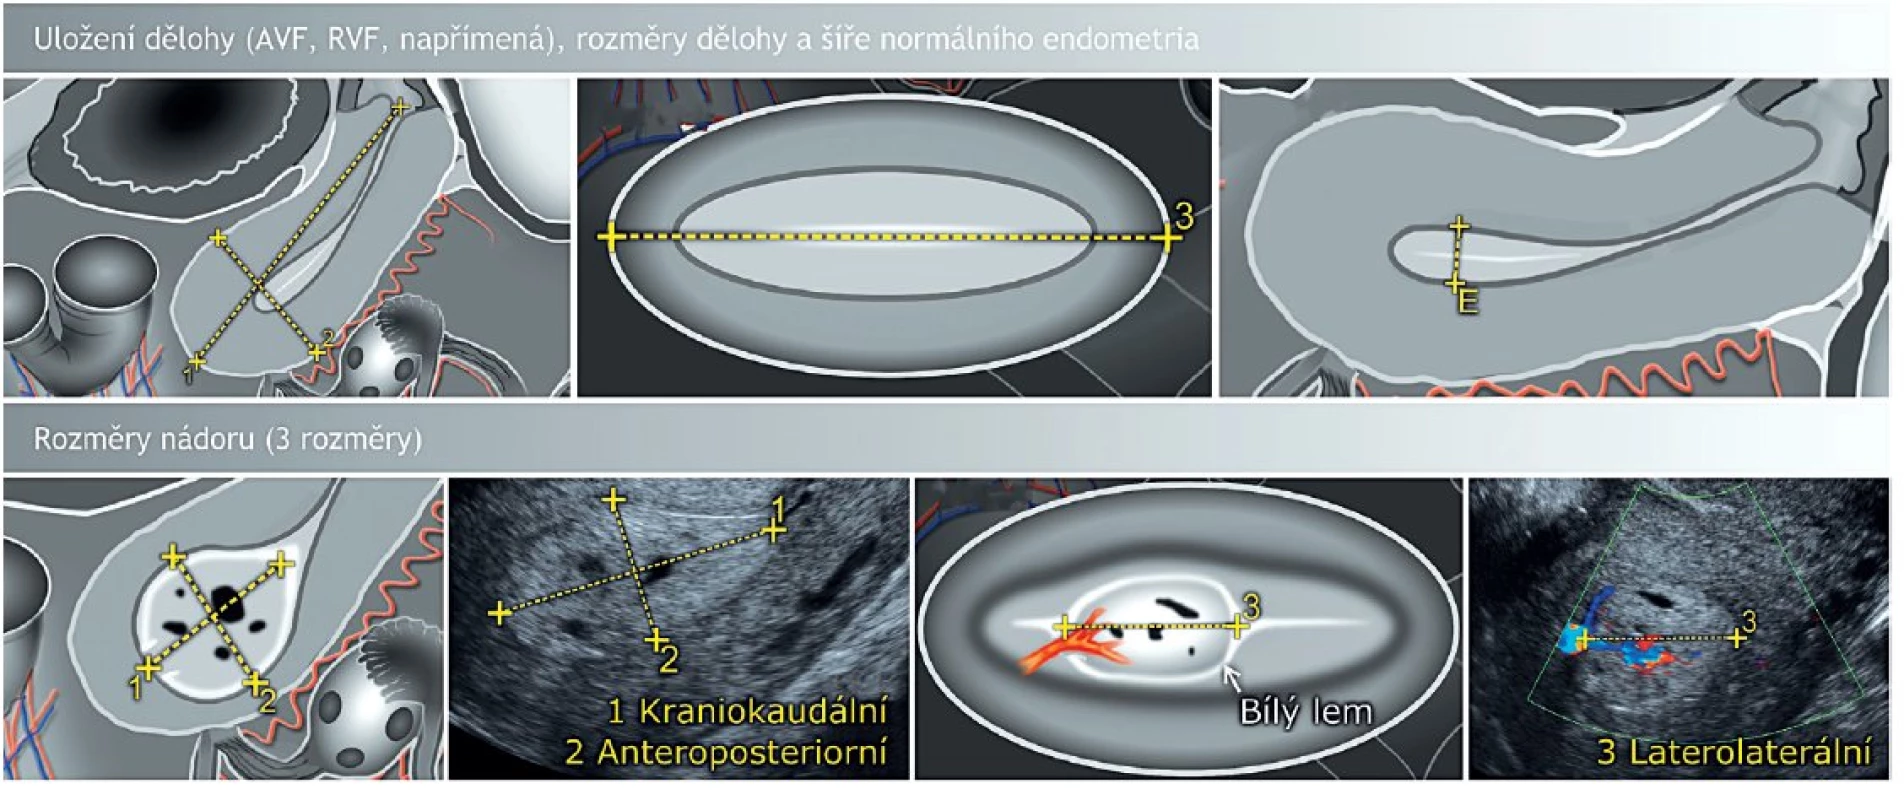 Zobrazení dělohy transvaginálním ultrazvukem v sagitální a transverzální rovině